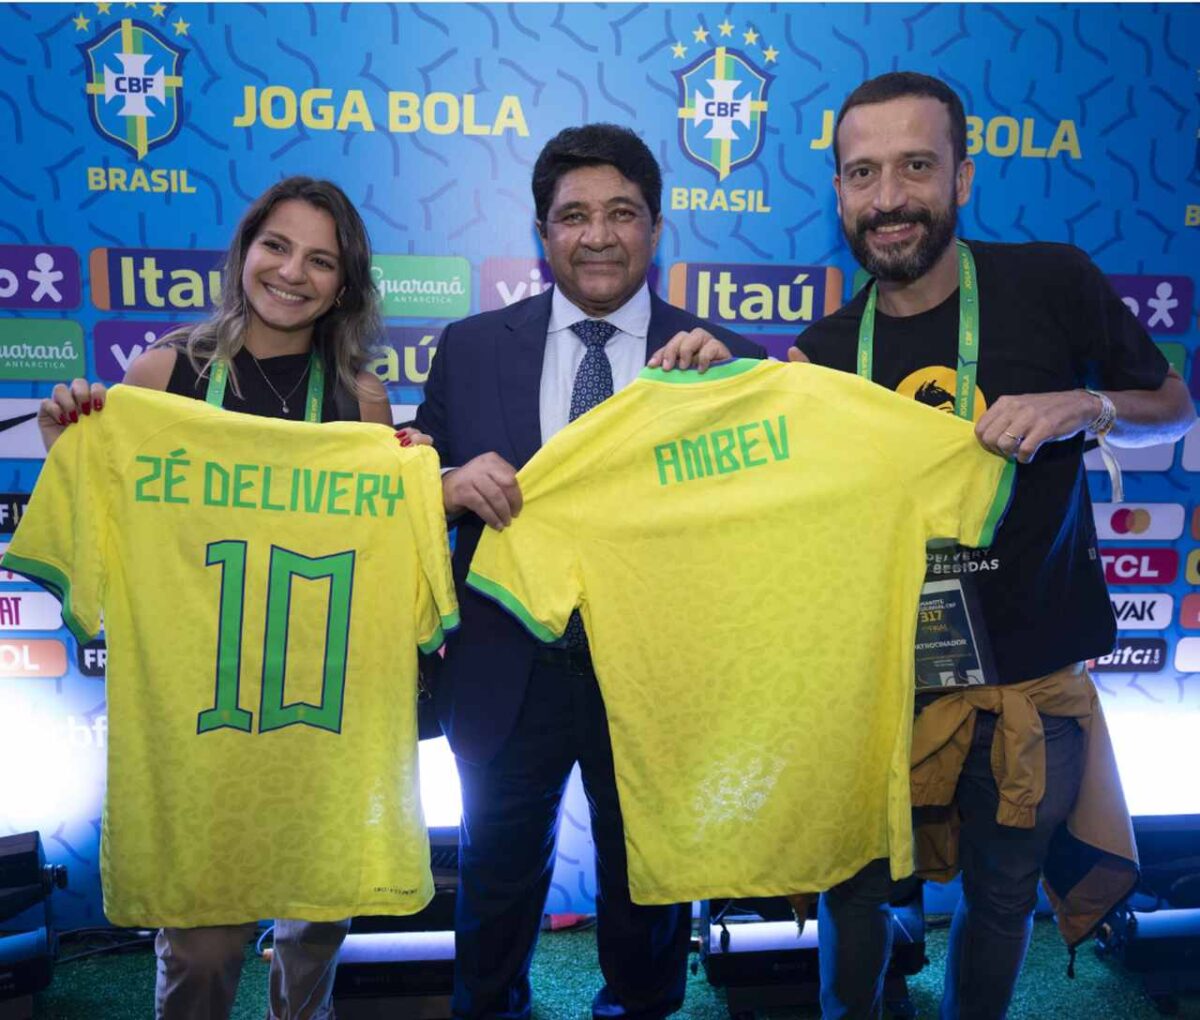 Zé Delivery fecha com a CBF e será o delivery oficial de bebidas da Seleção Brasileira